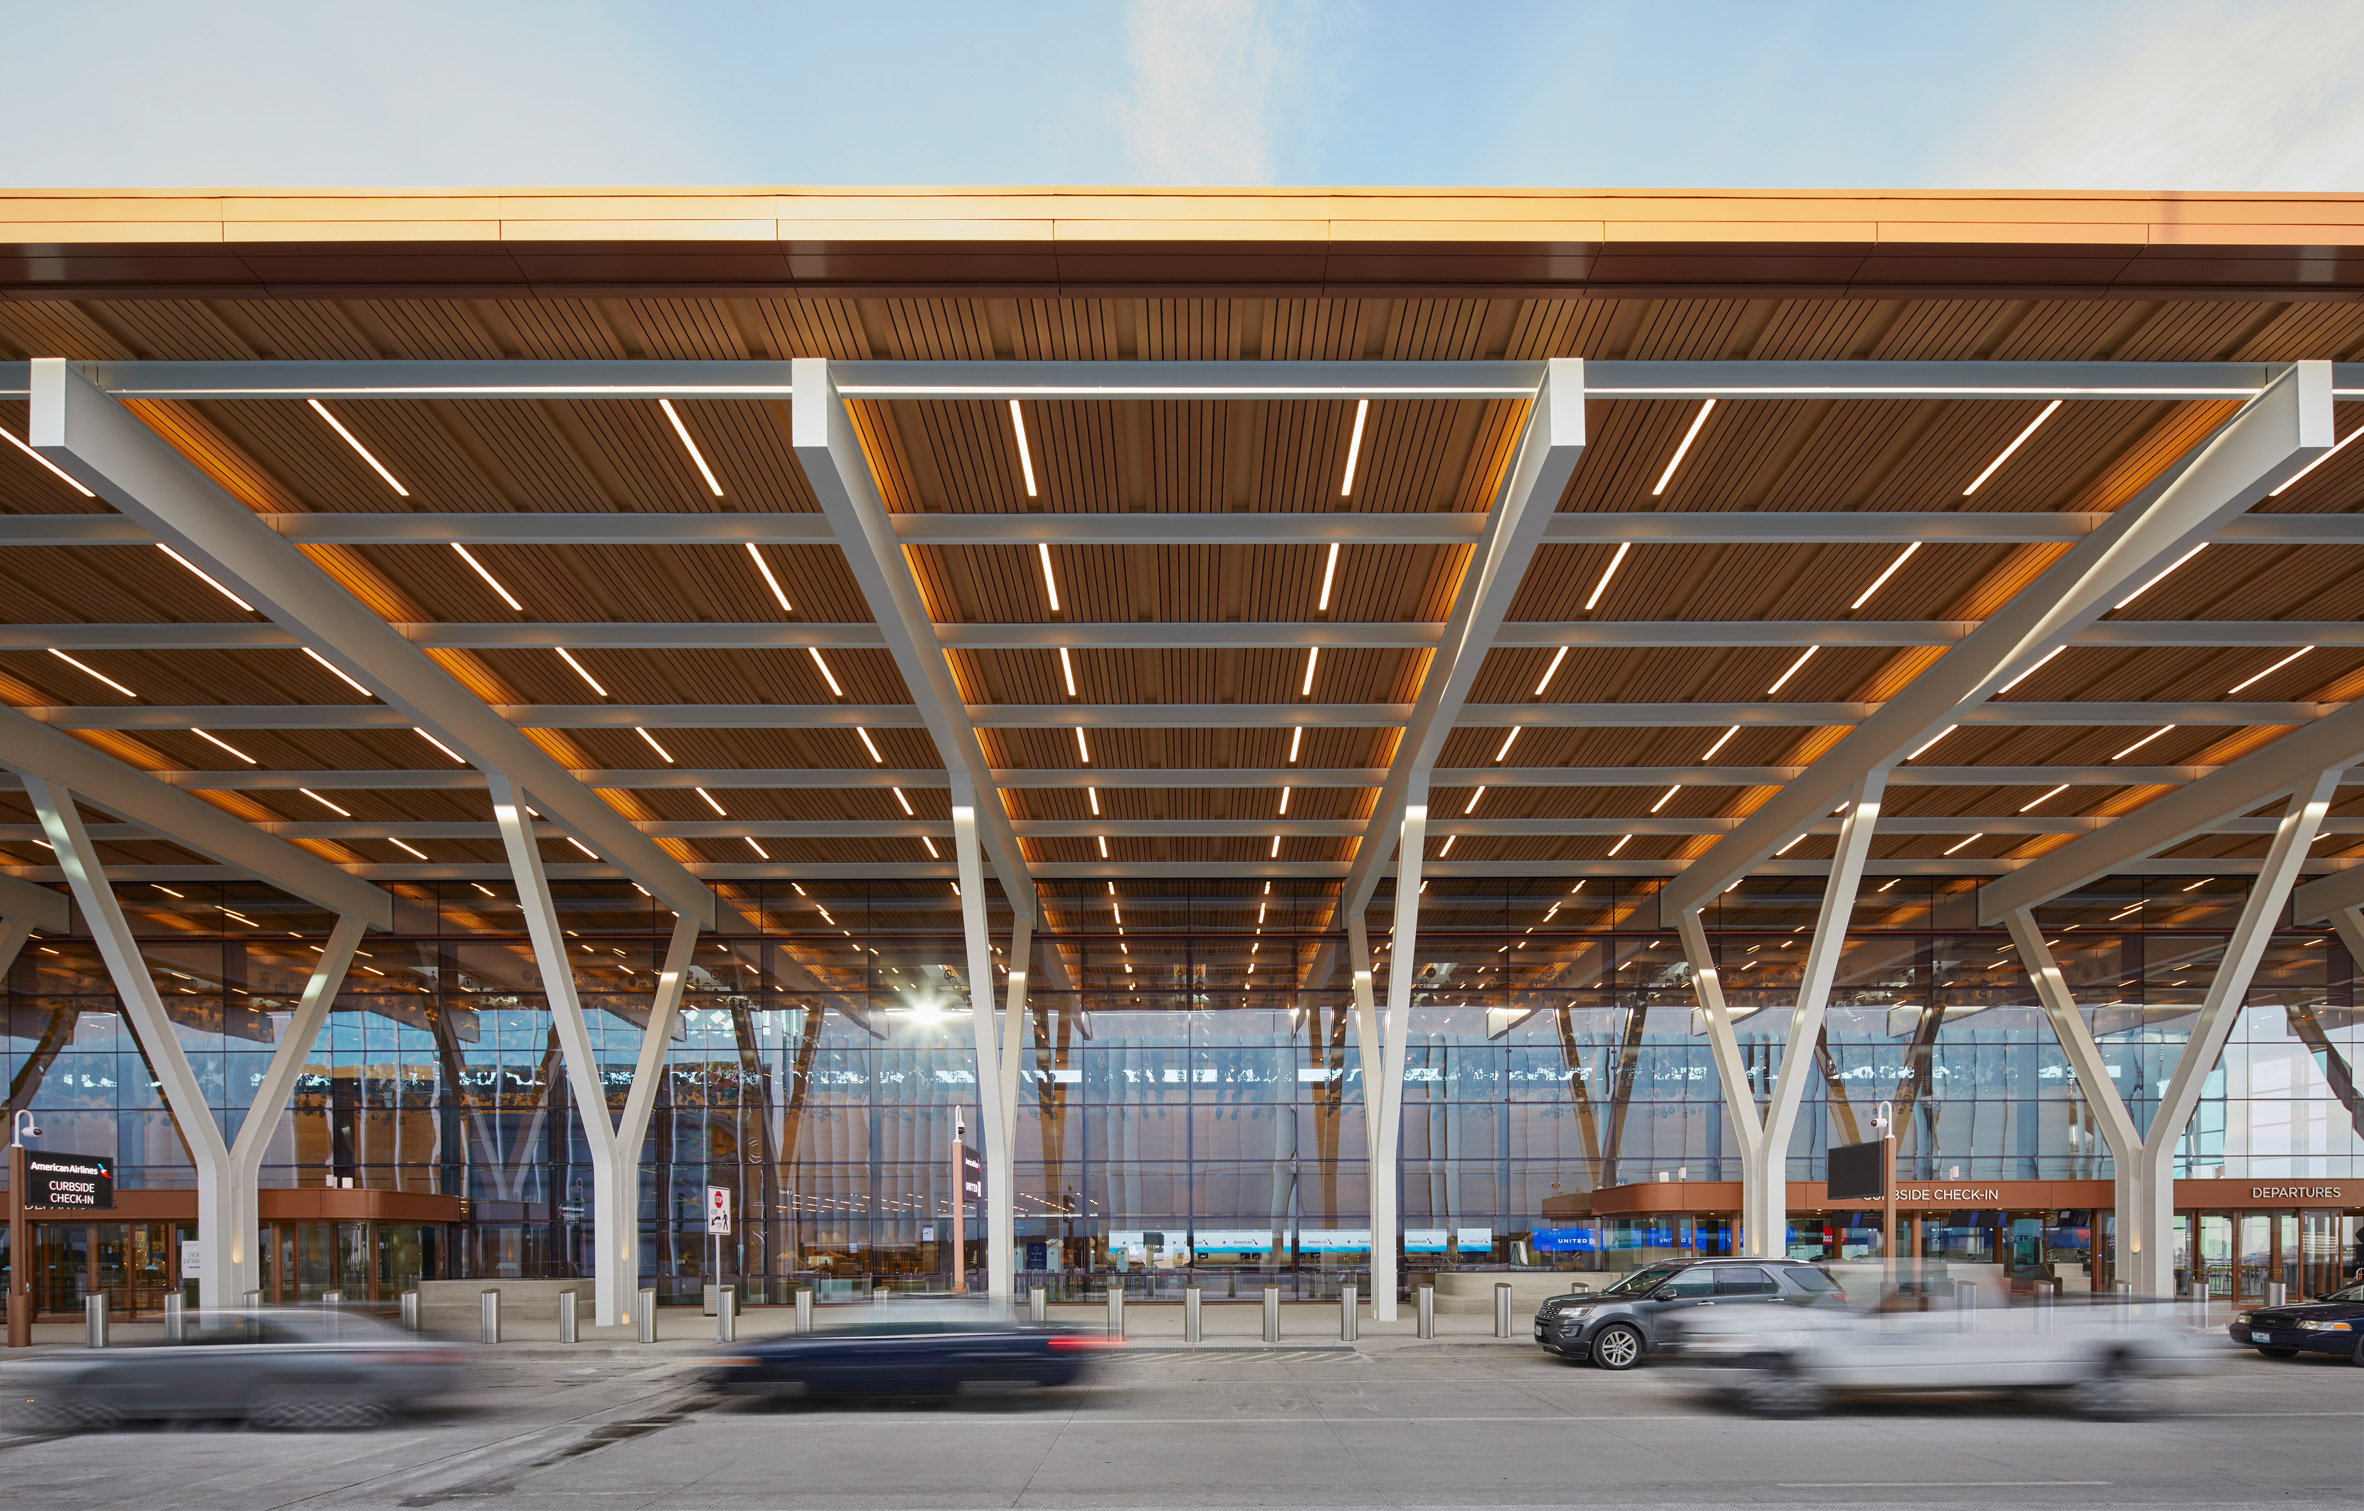 Timber canopy at Kansas City airport